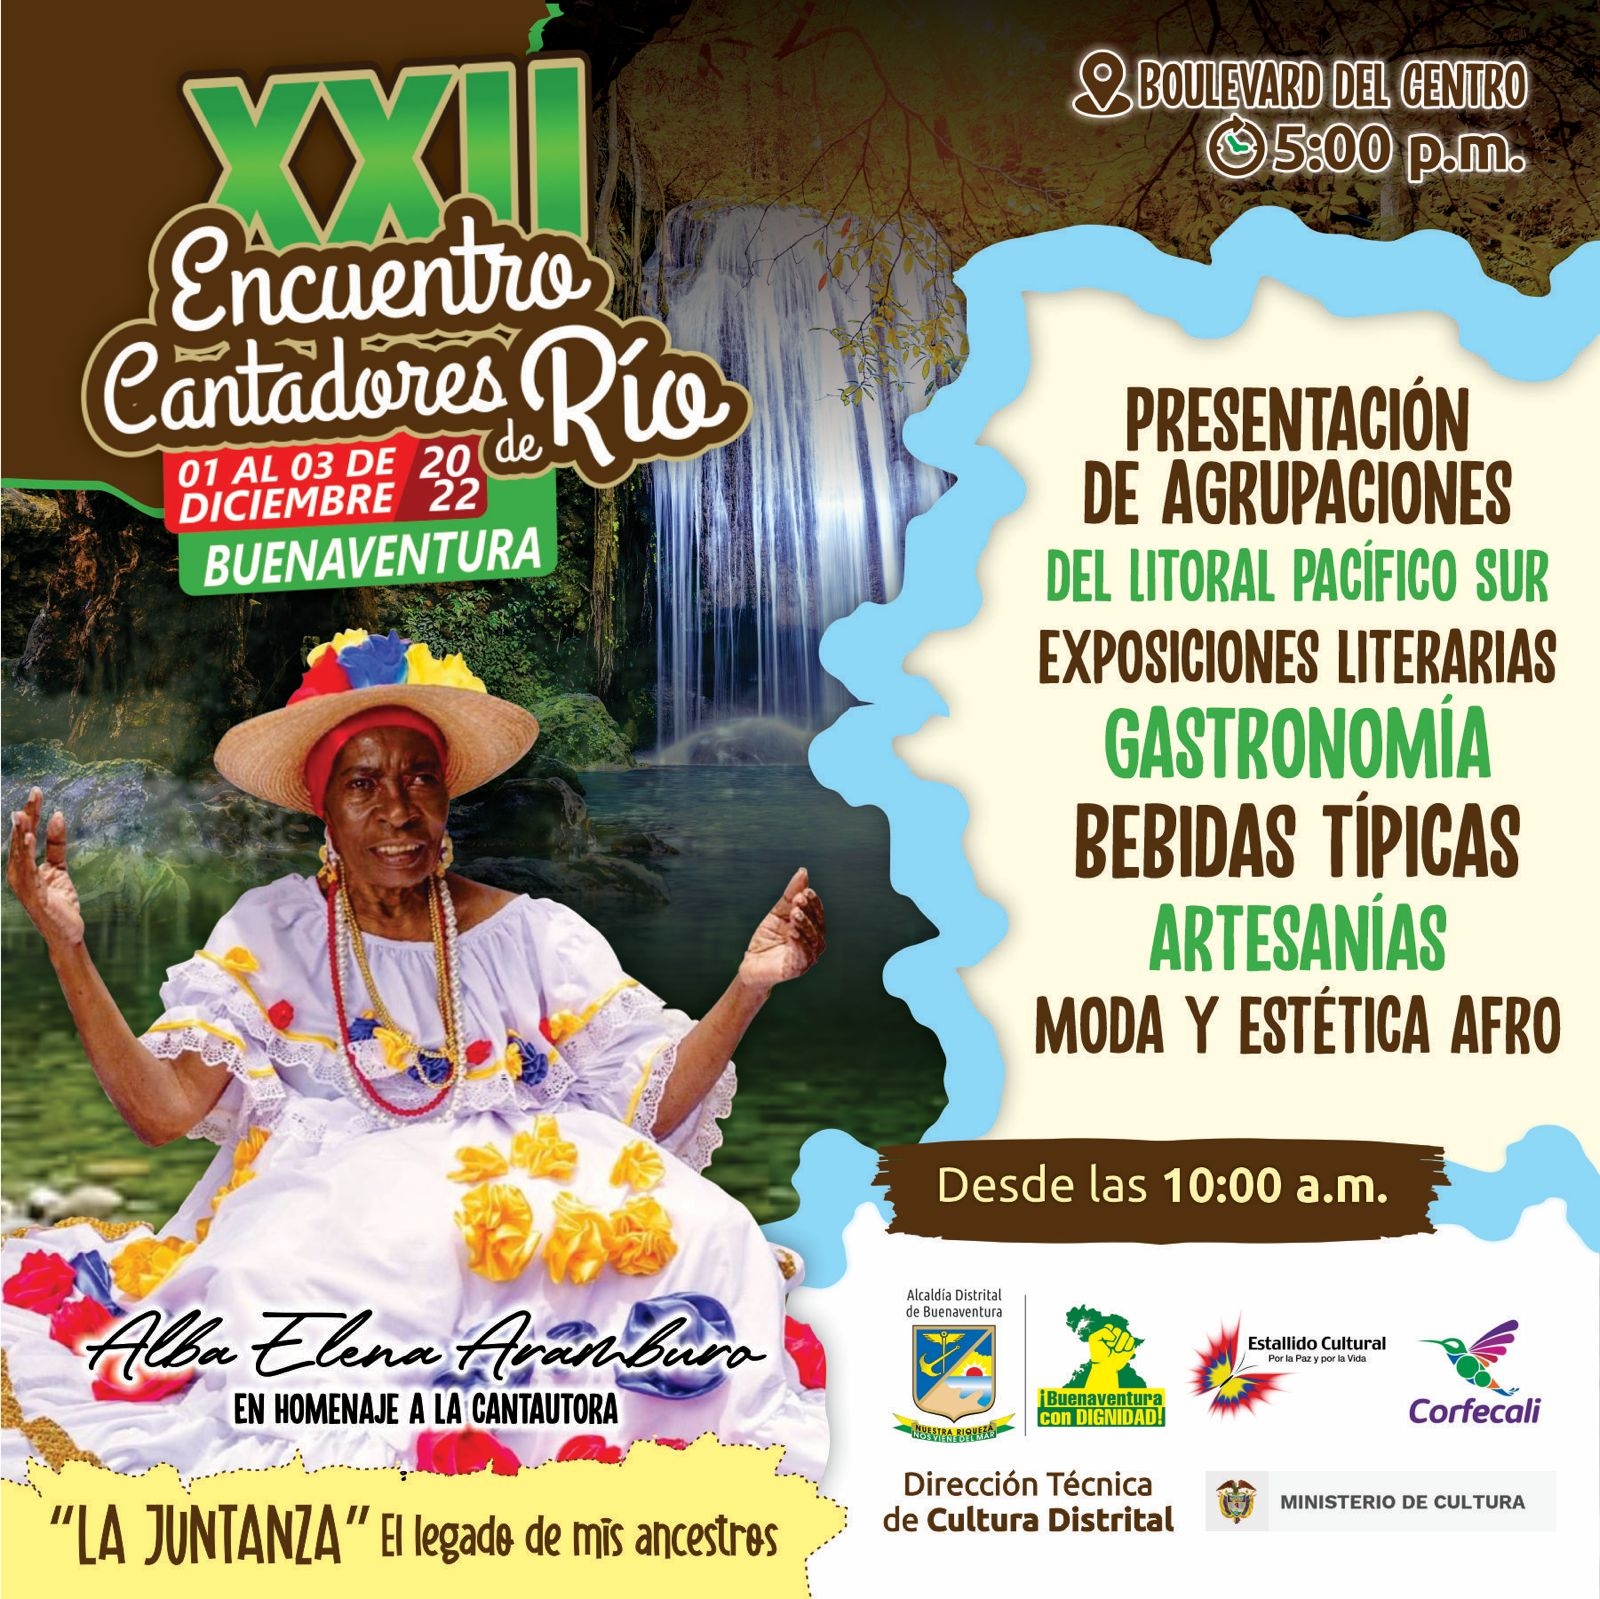 Conozca la programación del XXII de Cantadores de Río que inicia el jueves 1 de diciembre en el Bulevar del Centro de Buenaventura 